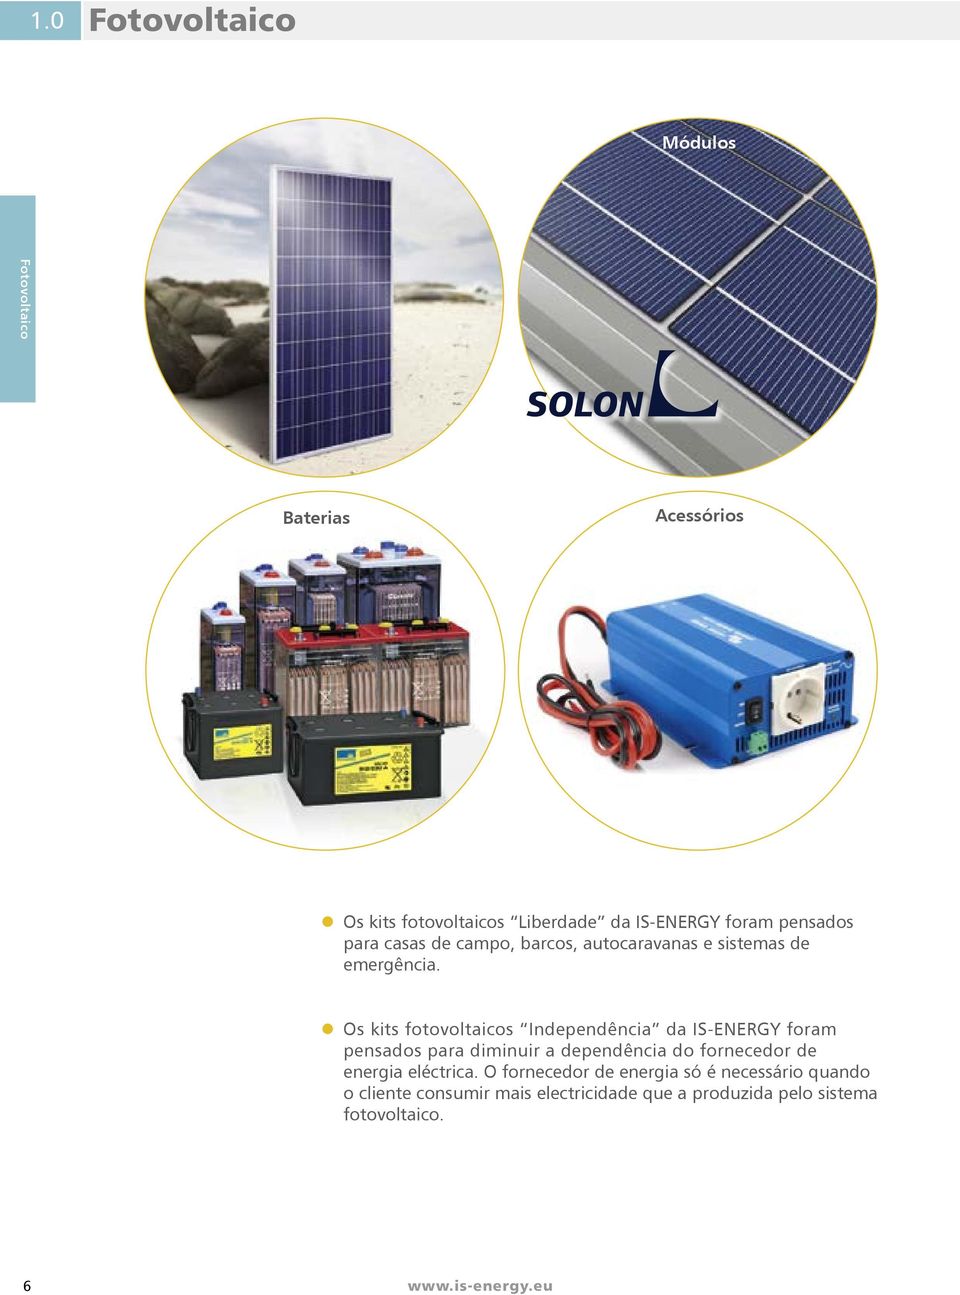 Os kits fotovoltaicos Independência da IS-ENERGY foram pensados para diminuir a dependência do fornecedor de